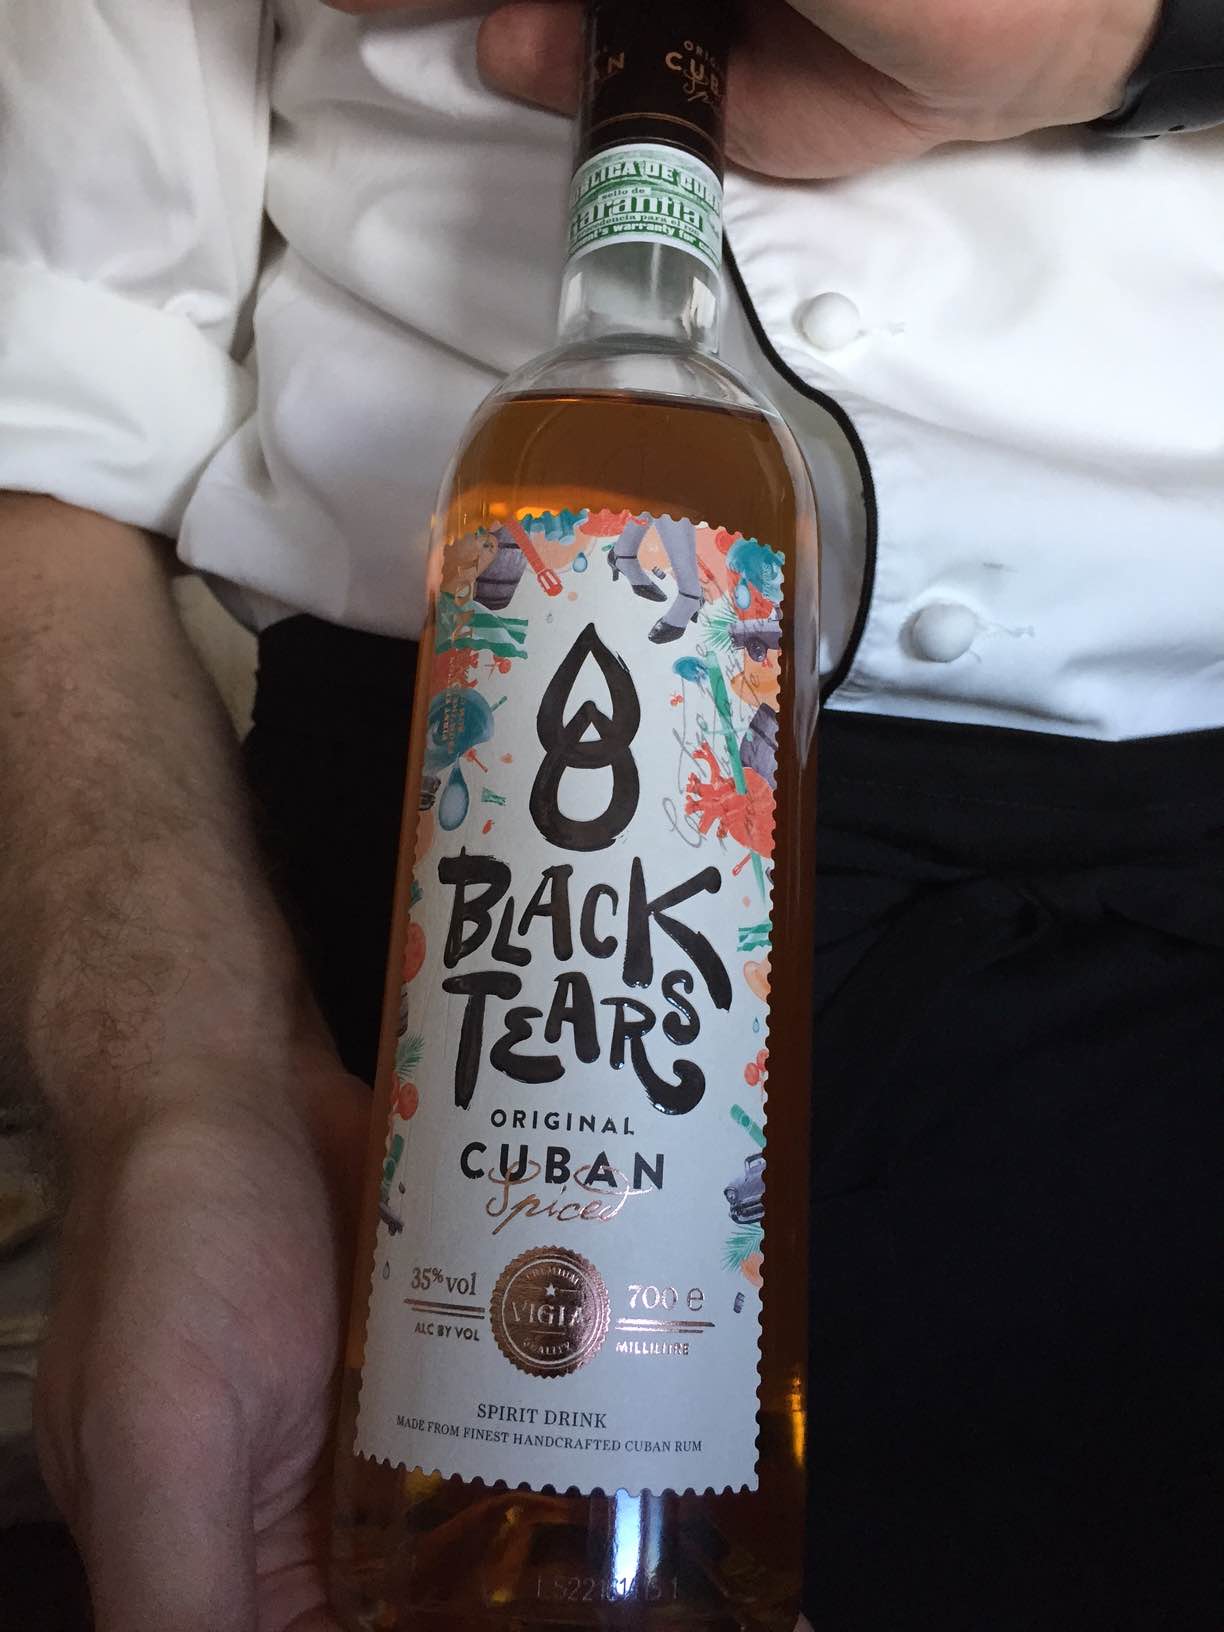 Black tears cuban rum findes i en begrænset periode på Business Class til og fra Miami.